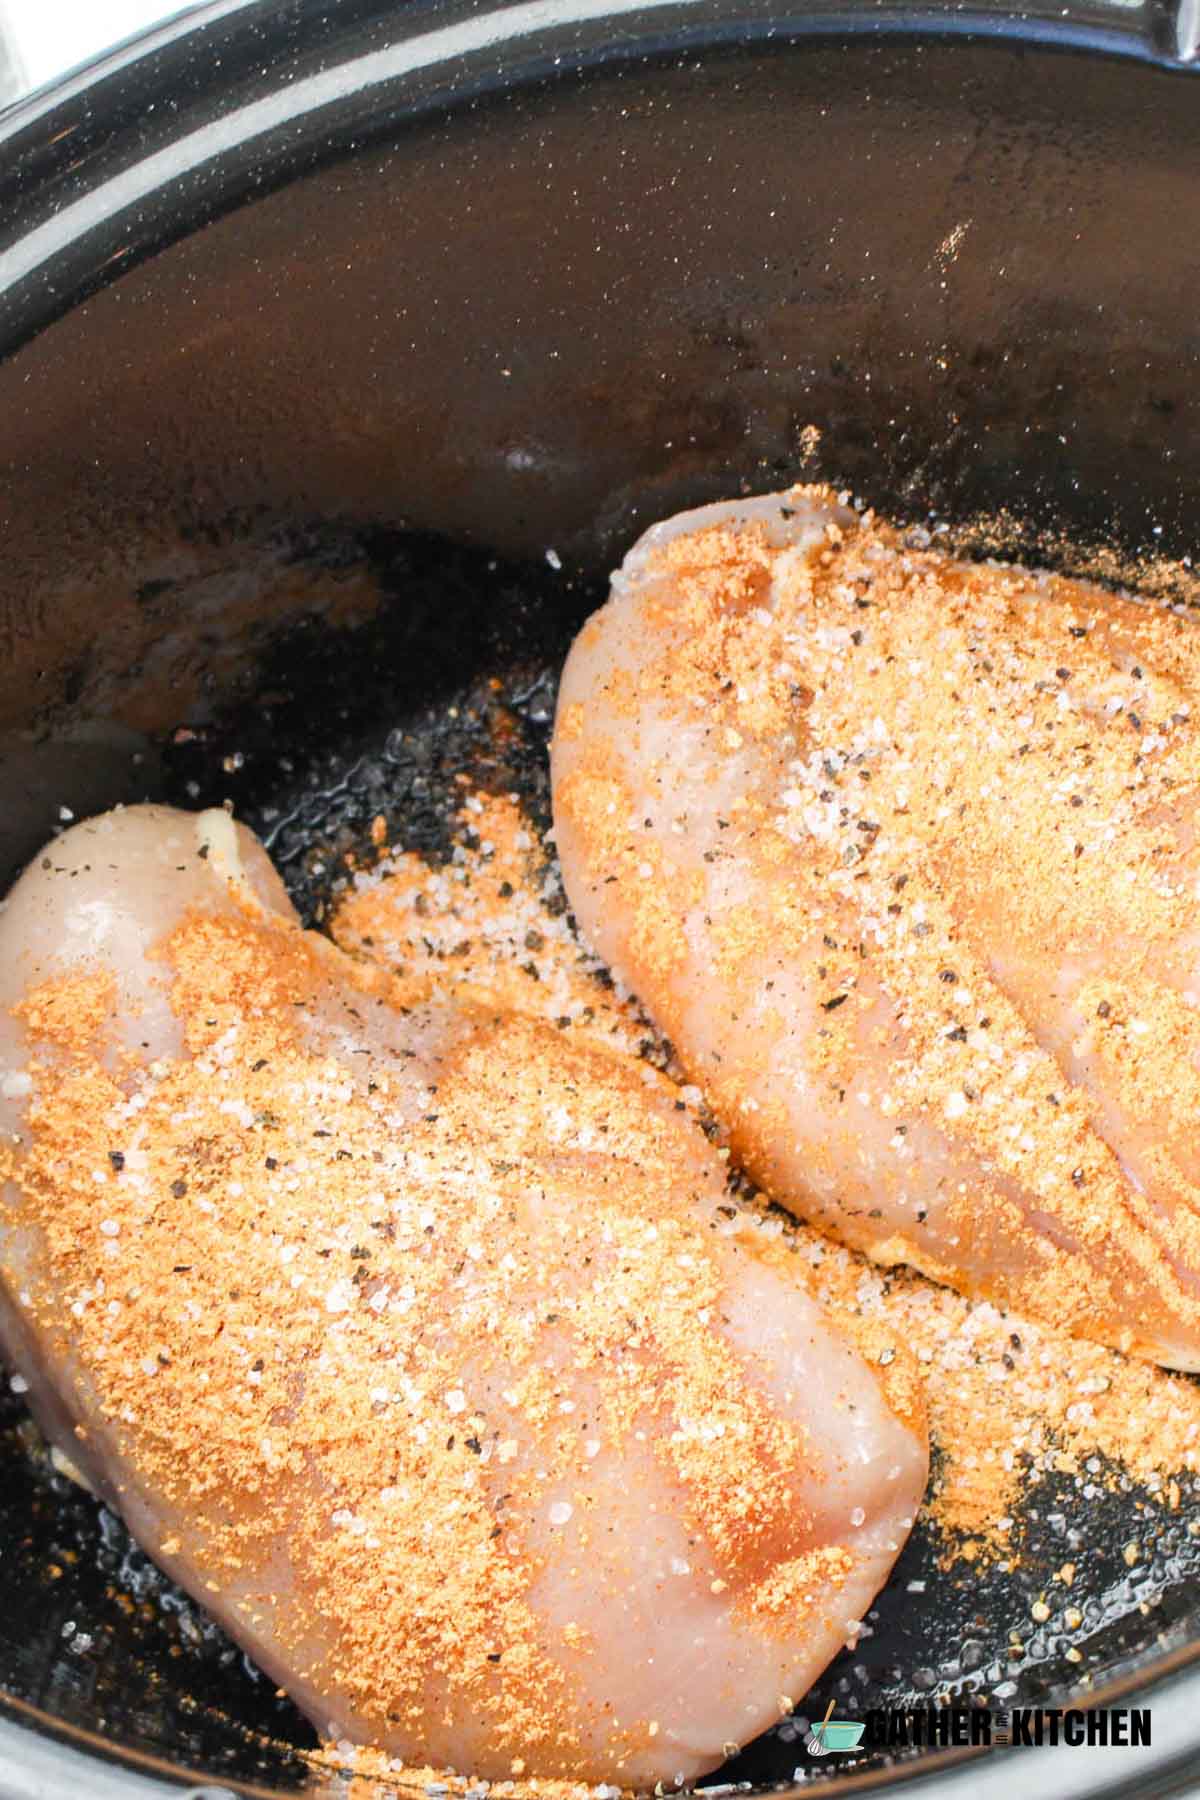 Chicken sprinkled with seasonings.